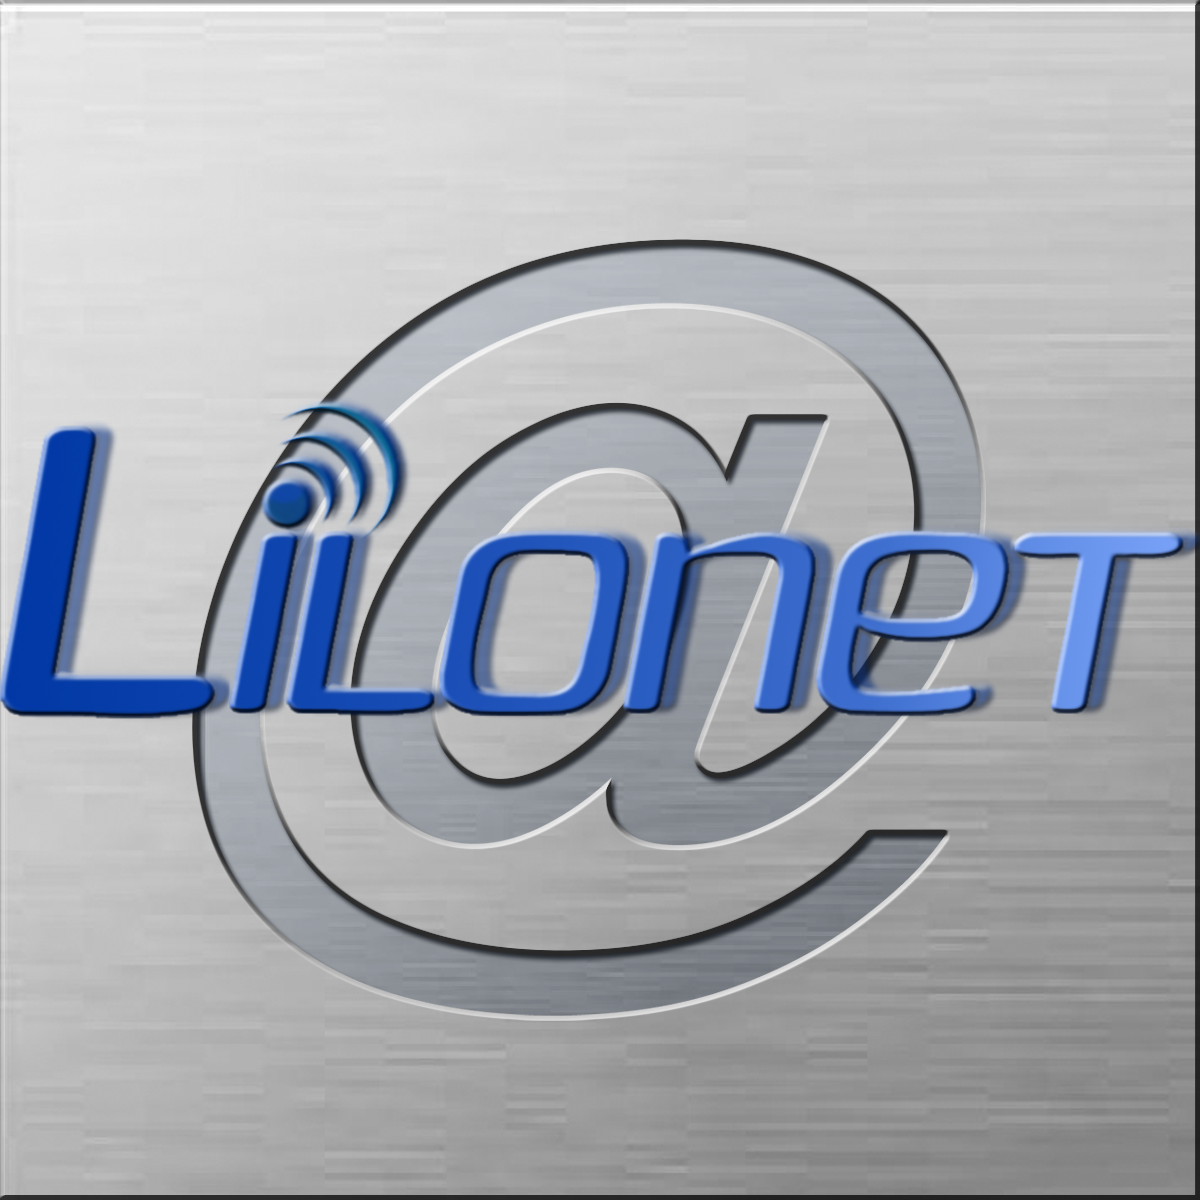 Lilonet - Internet, komputery